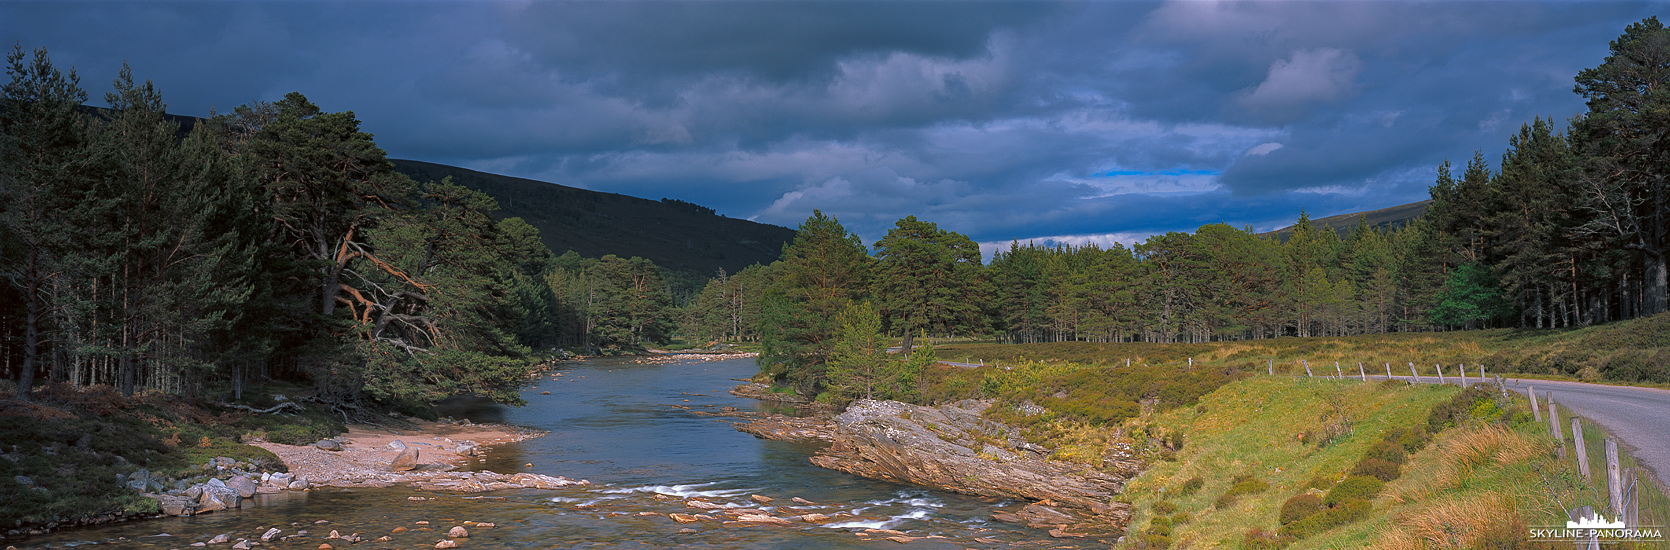 Landschaft Schottland - Panorama River Dee (p_01245)